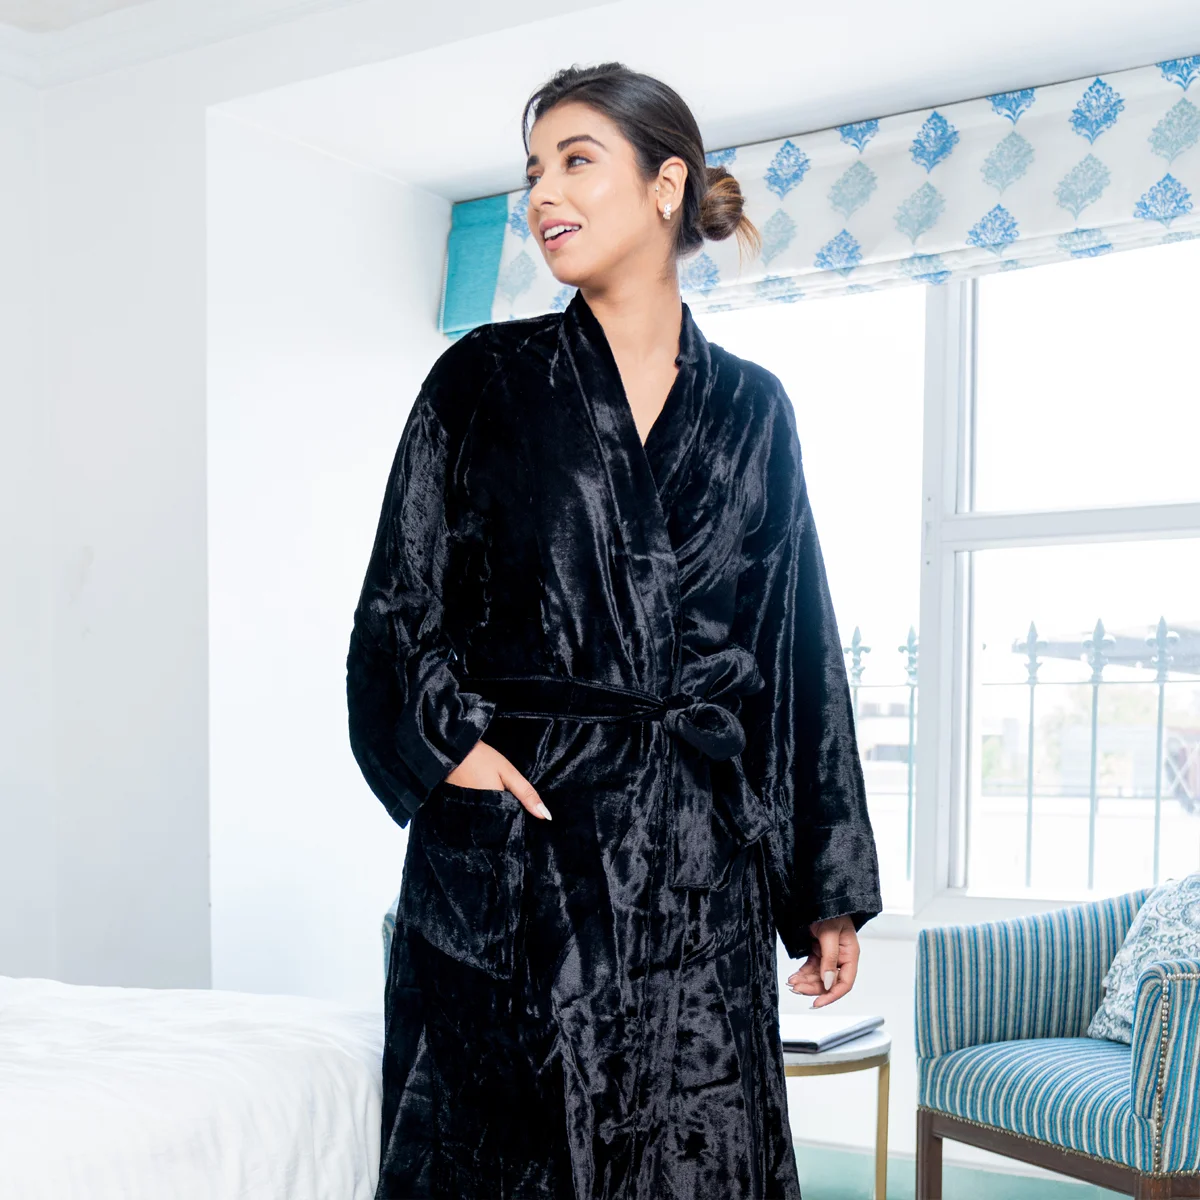 Floral Pattern Kimono Robe Long Bathrobe For Women (Black) – Kreate